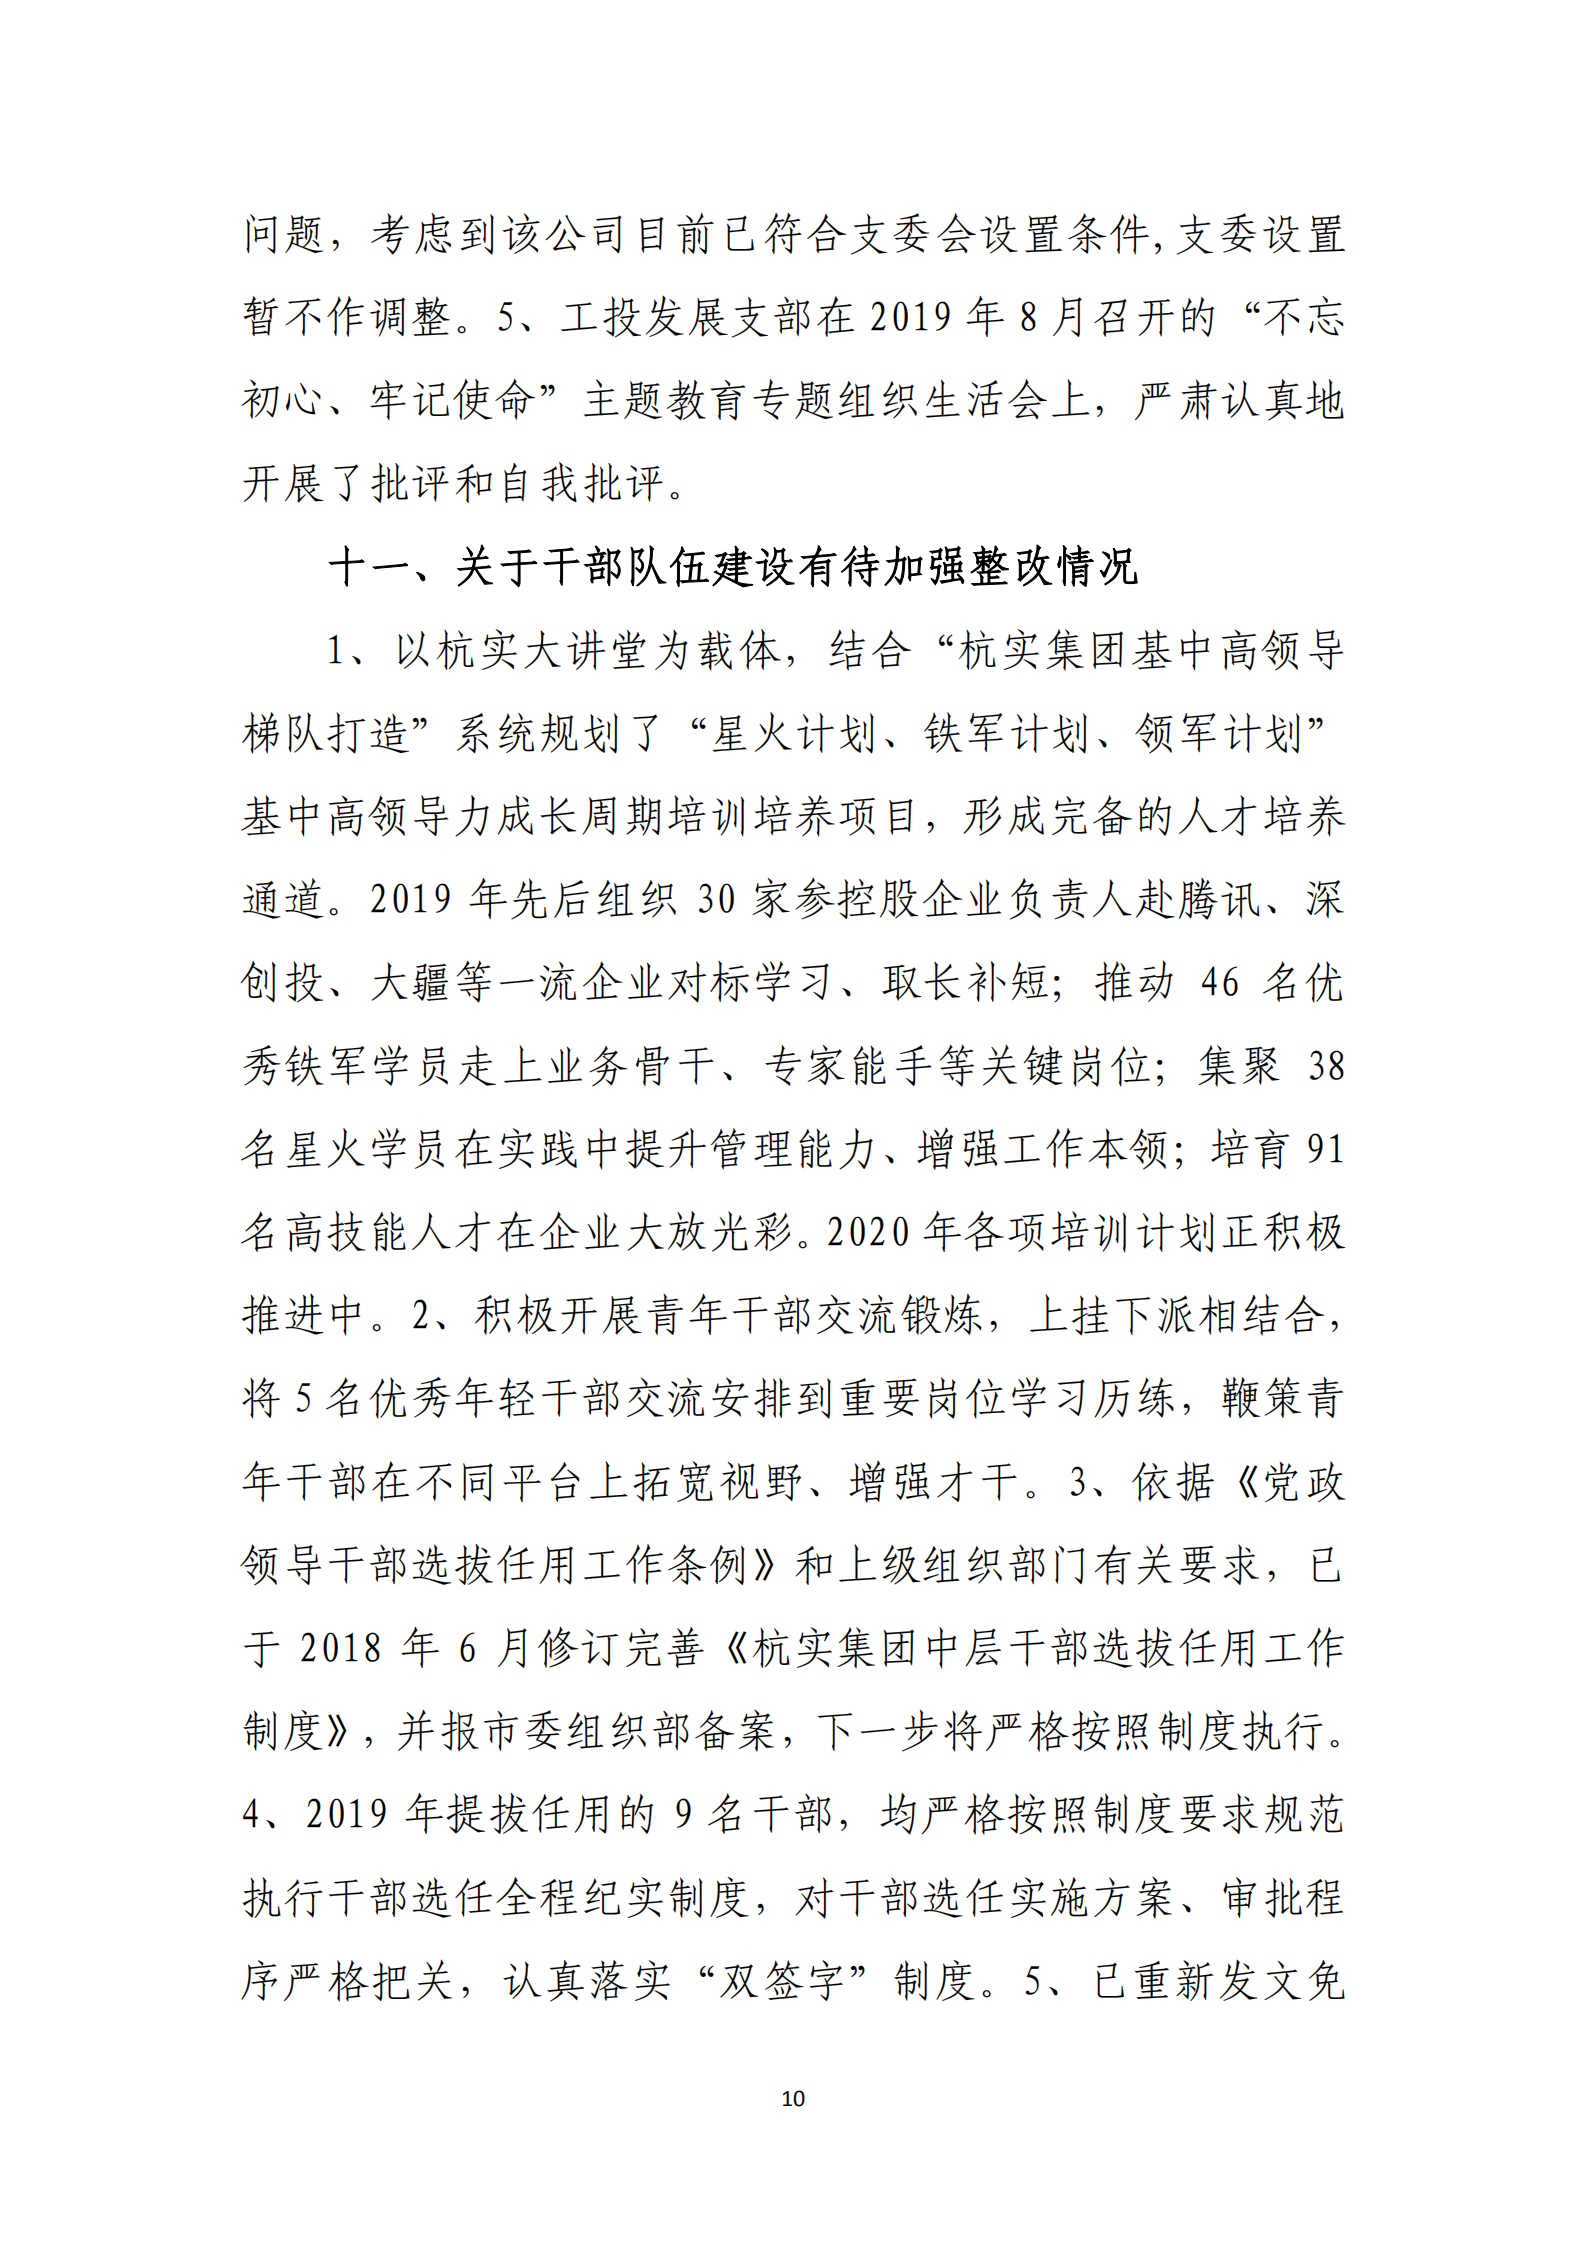 大阳城集团娱乐游戏党委关于巡察整改情况的通报_09.png